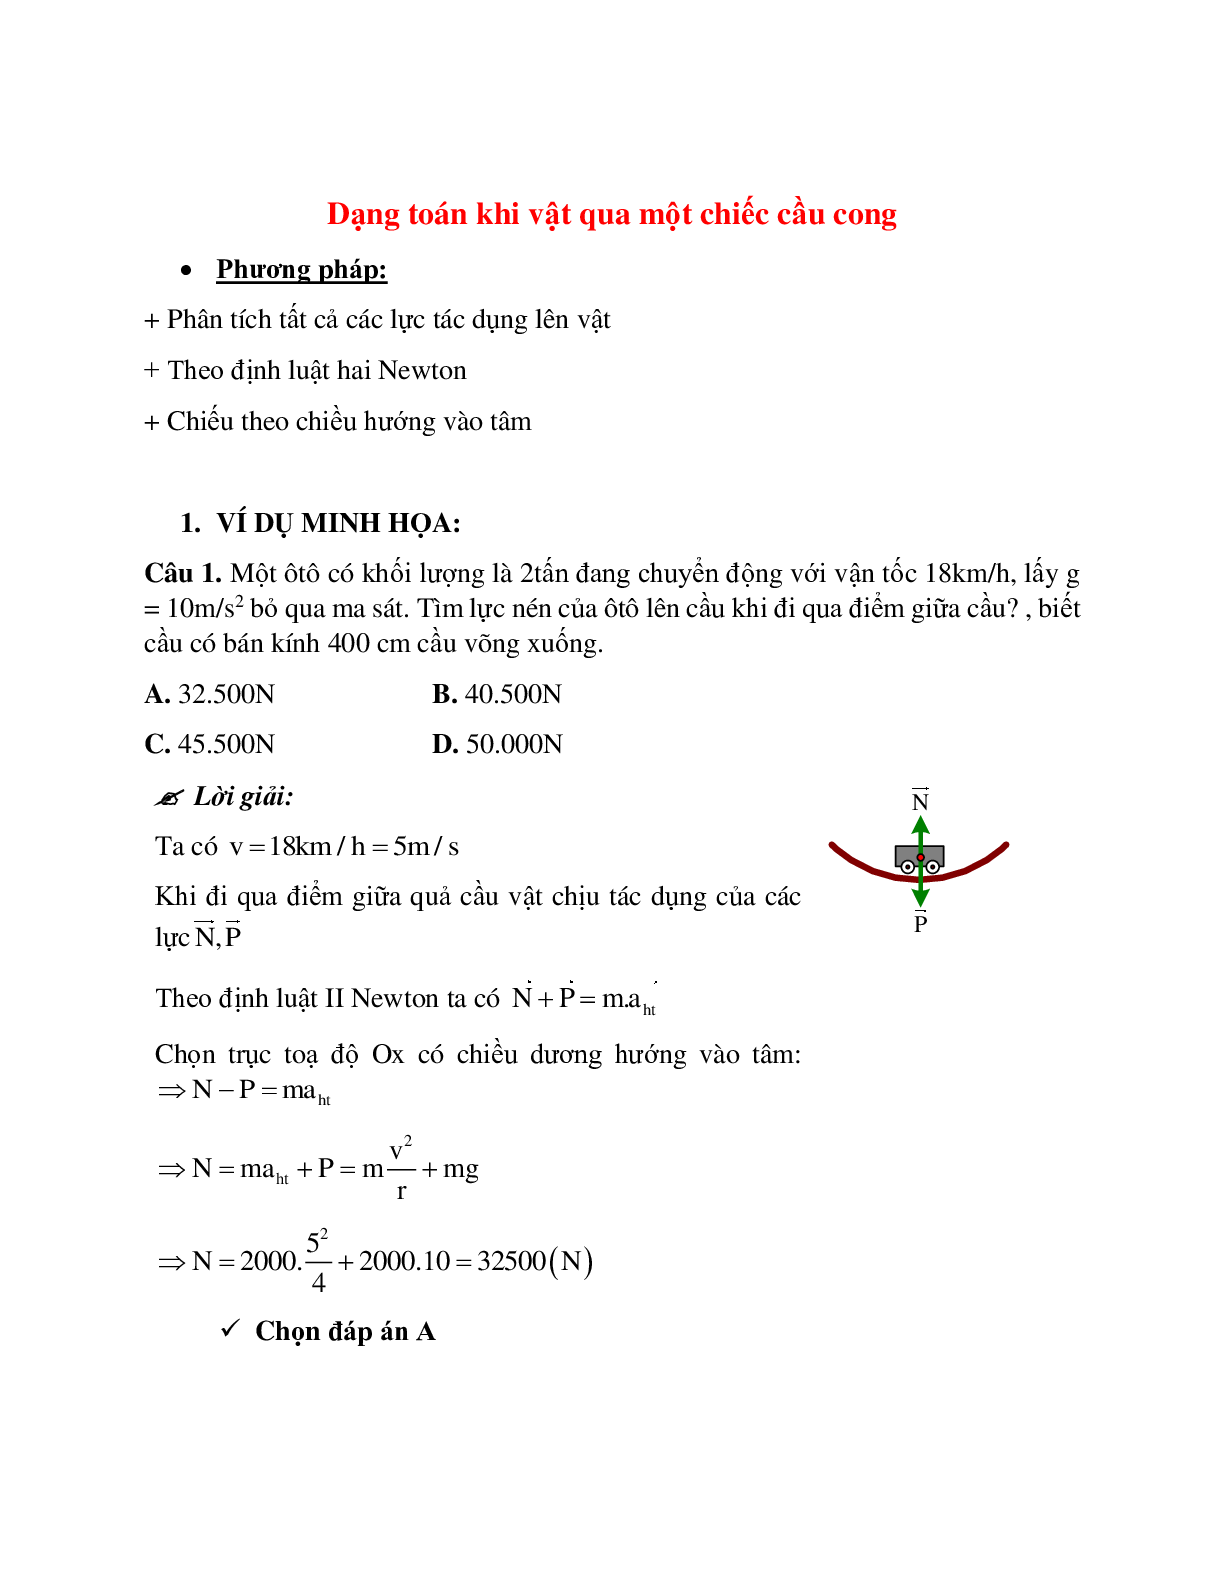 Phương pháp giải và bài tập về Dạng toán khi vật qua một chiếc cầu cong (trang 1)